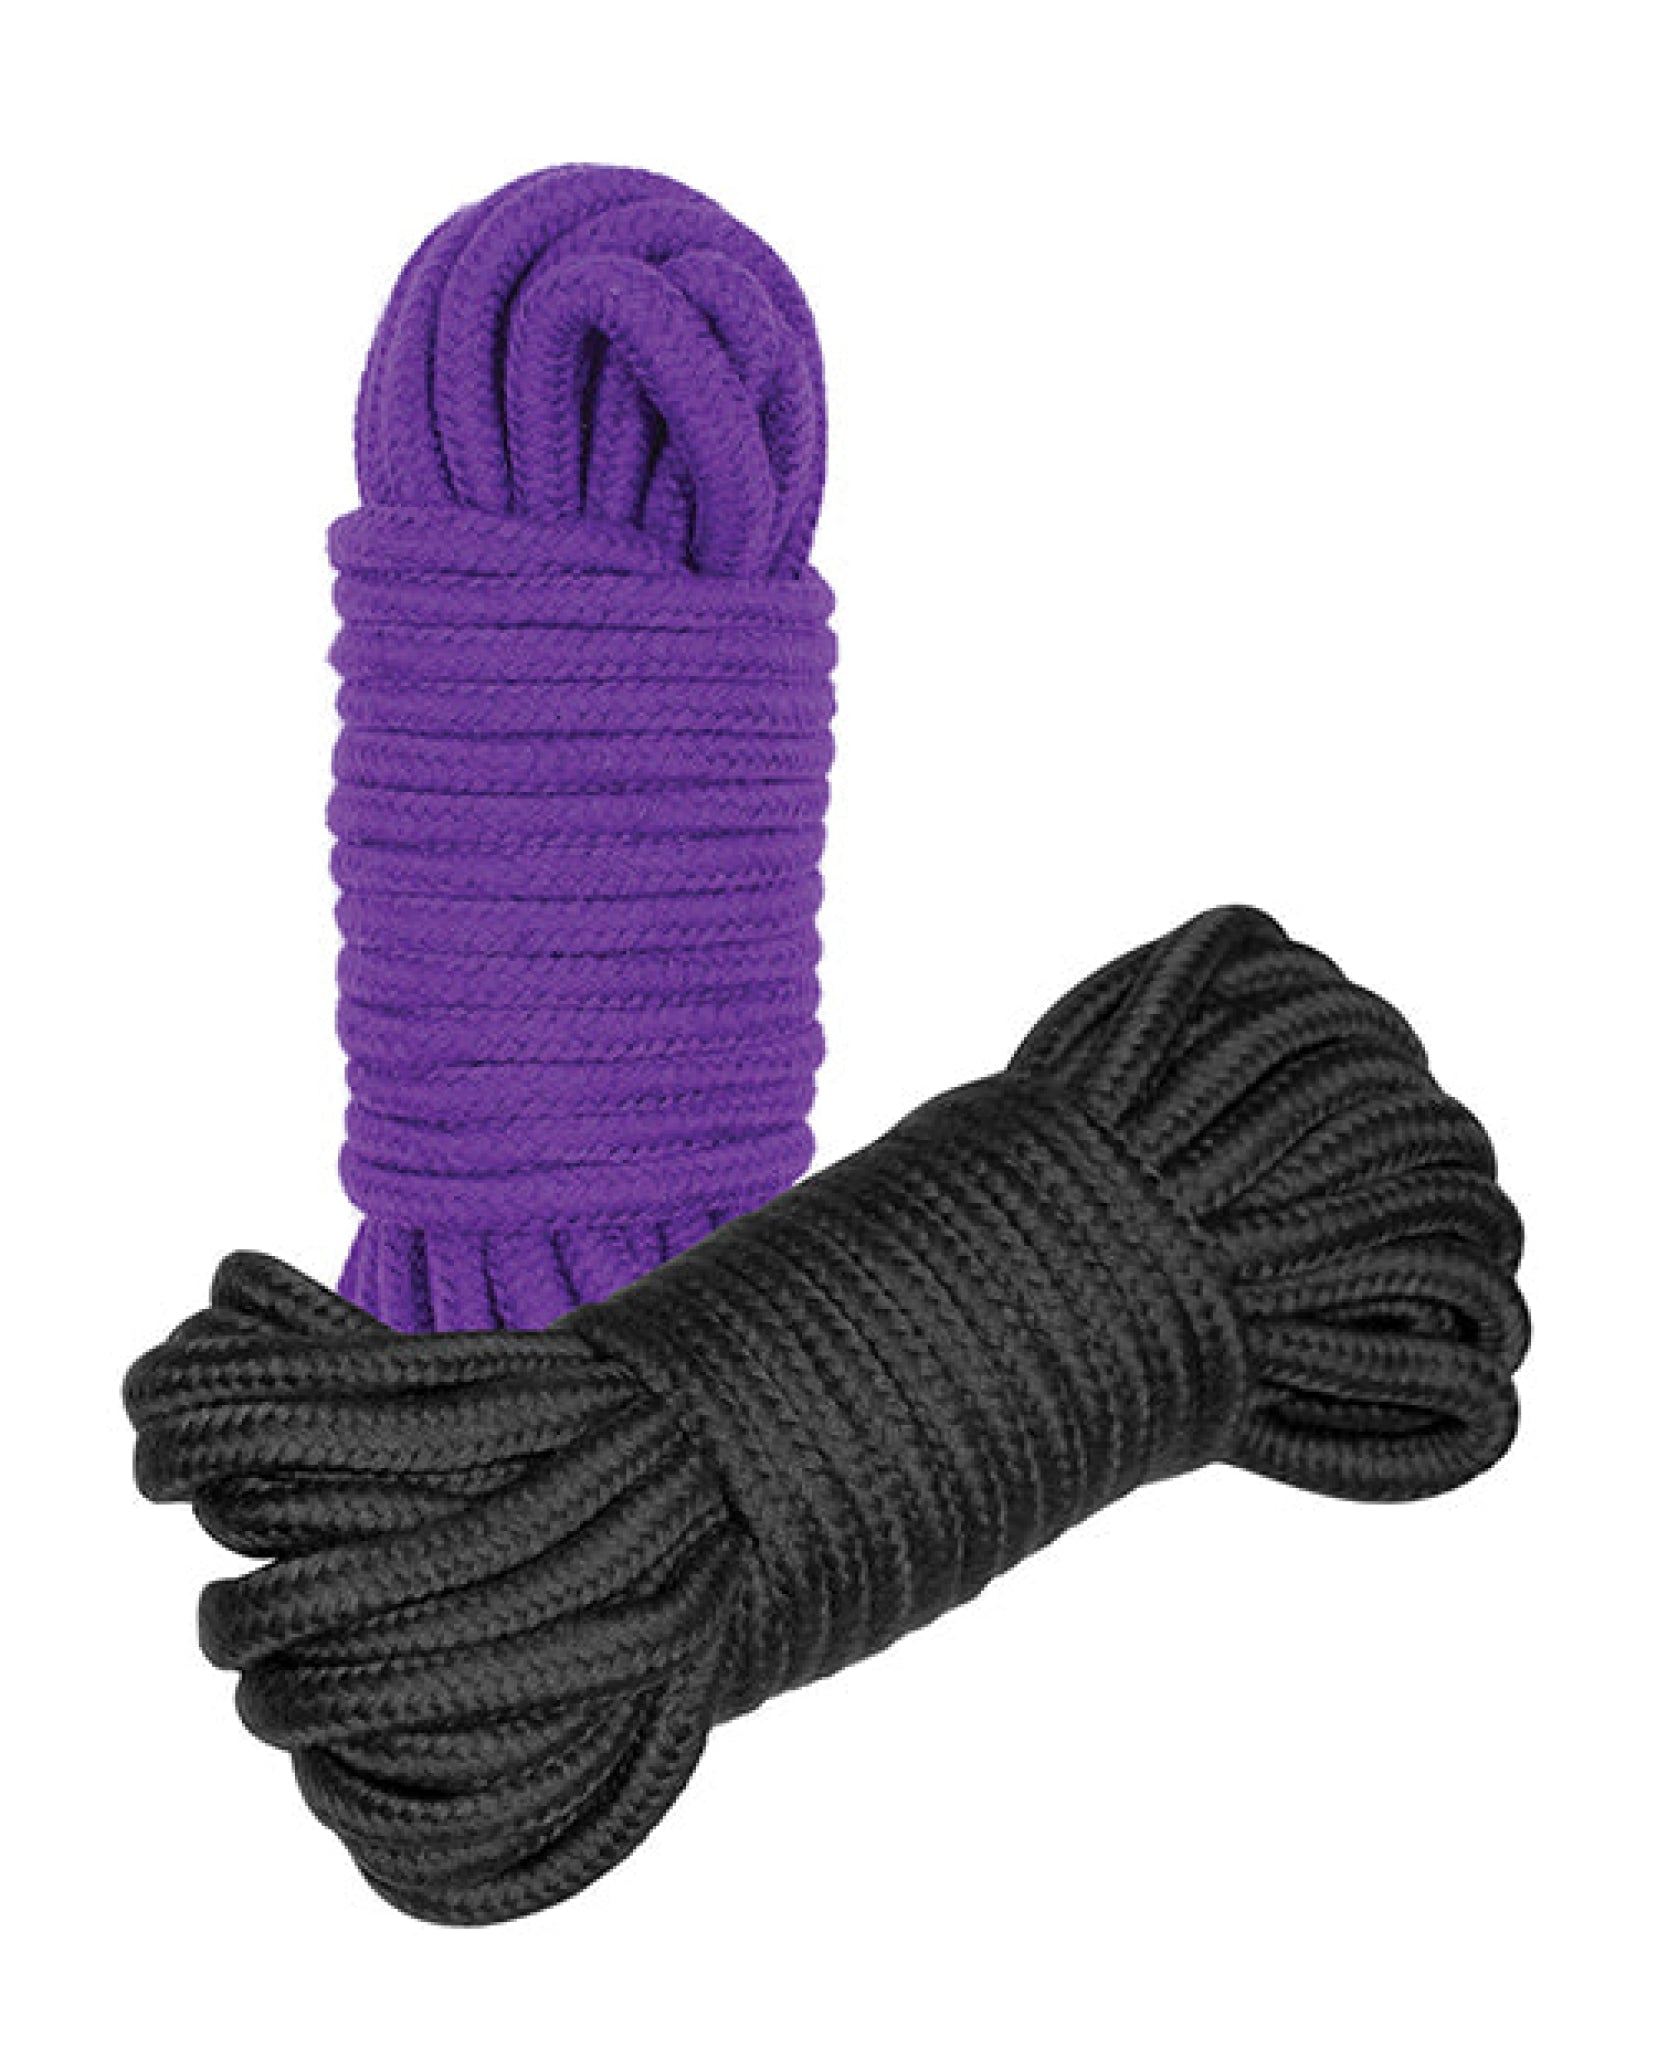 Plesur Cotton Shibari Bondage Rope 2 Pack Plesur